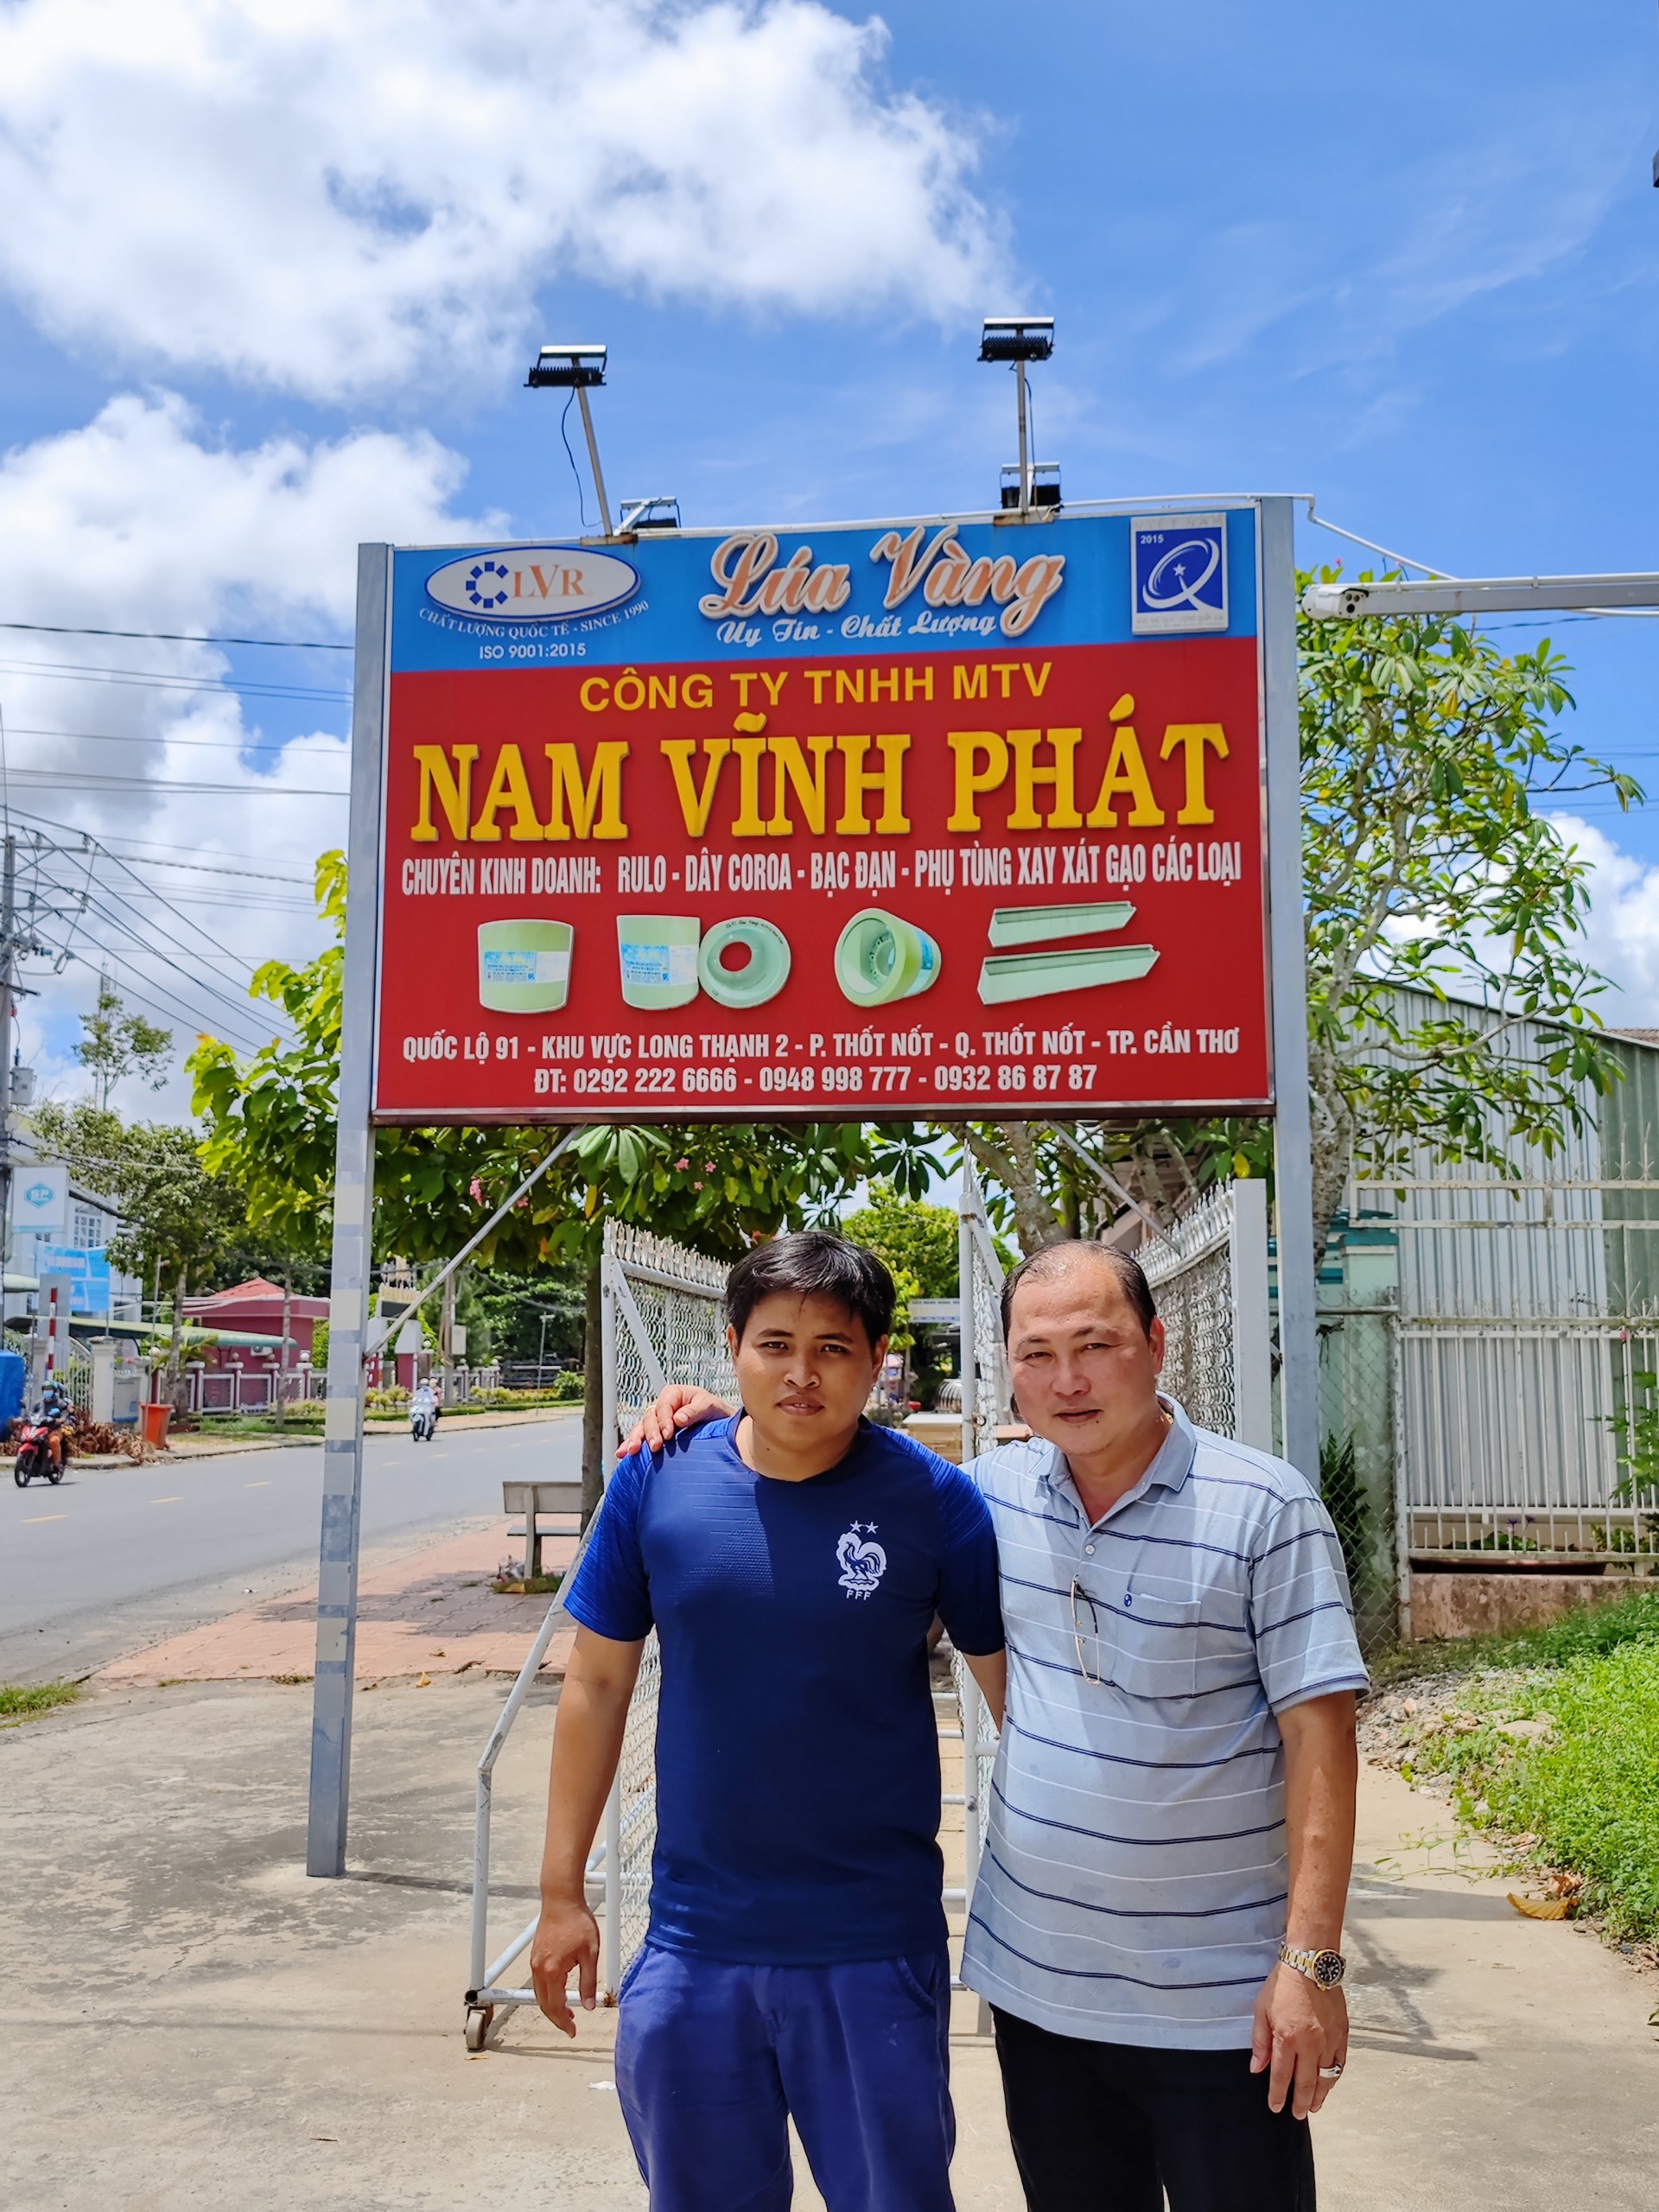 Đại Lý Nam Vĩnh Phát tại Thốt Nốt - Cần Thơ chuyên kinh doanh rulo phụ tùng cho nhà máy xay xát lúa gạo các loại